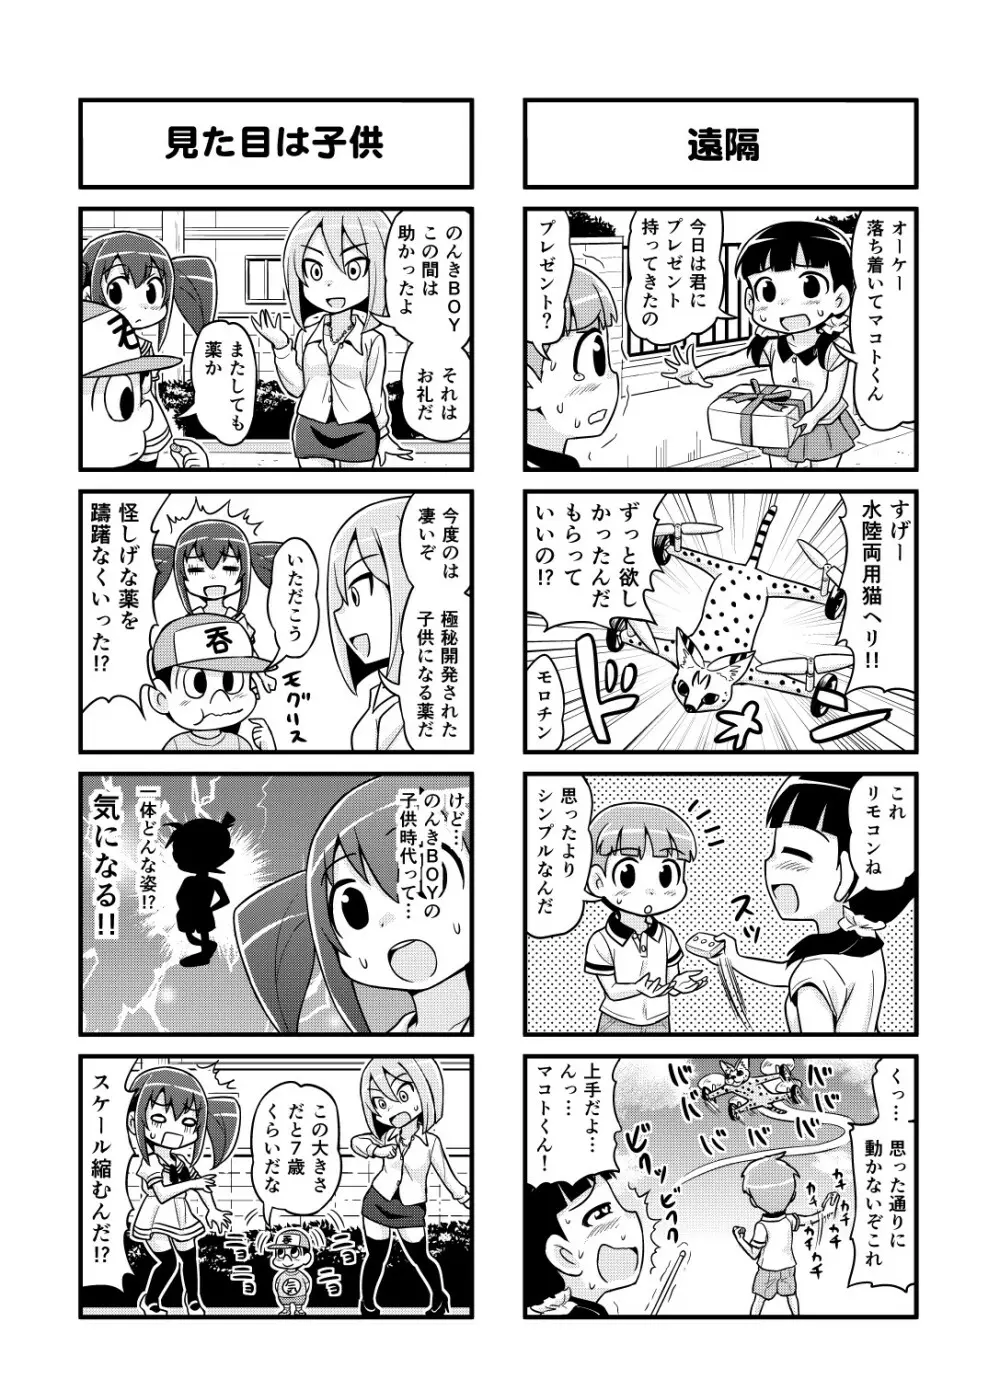 のんきBOY 1-48 - page100